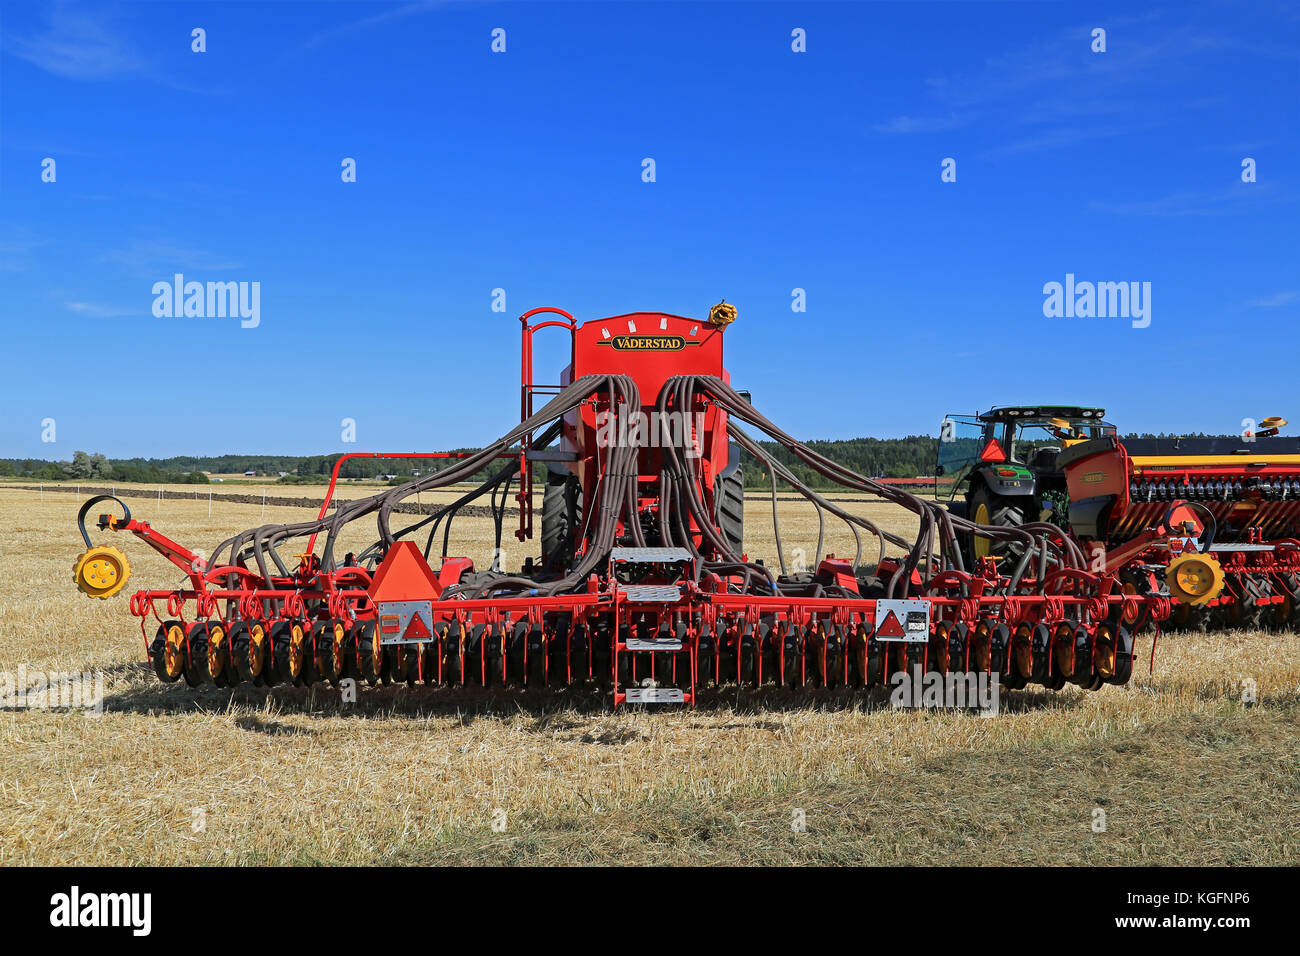 Salo, Finnland - 21 August 2015: vaderstad Geist 600 c Drillmaschine und John Deere Traktor auf dem Feld an der von puontin peltopaivat landwirtschaftlichen ha festlegen Stockfoto